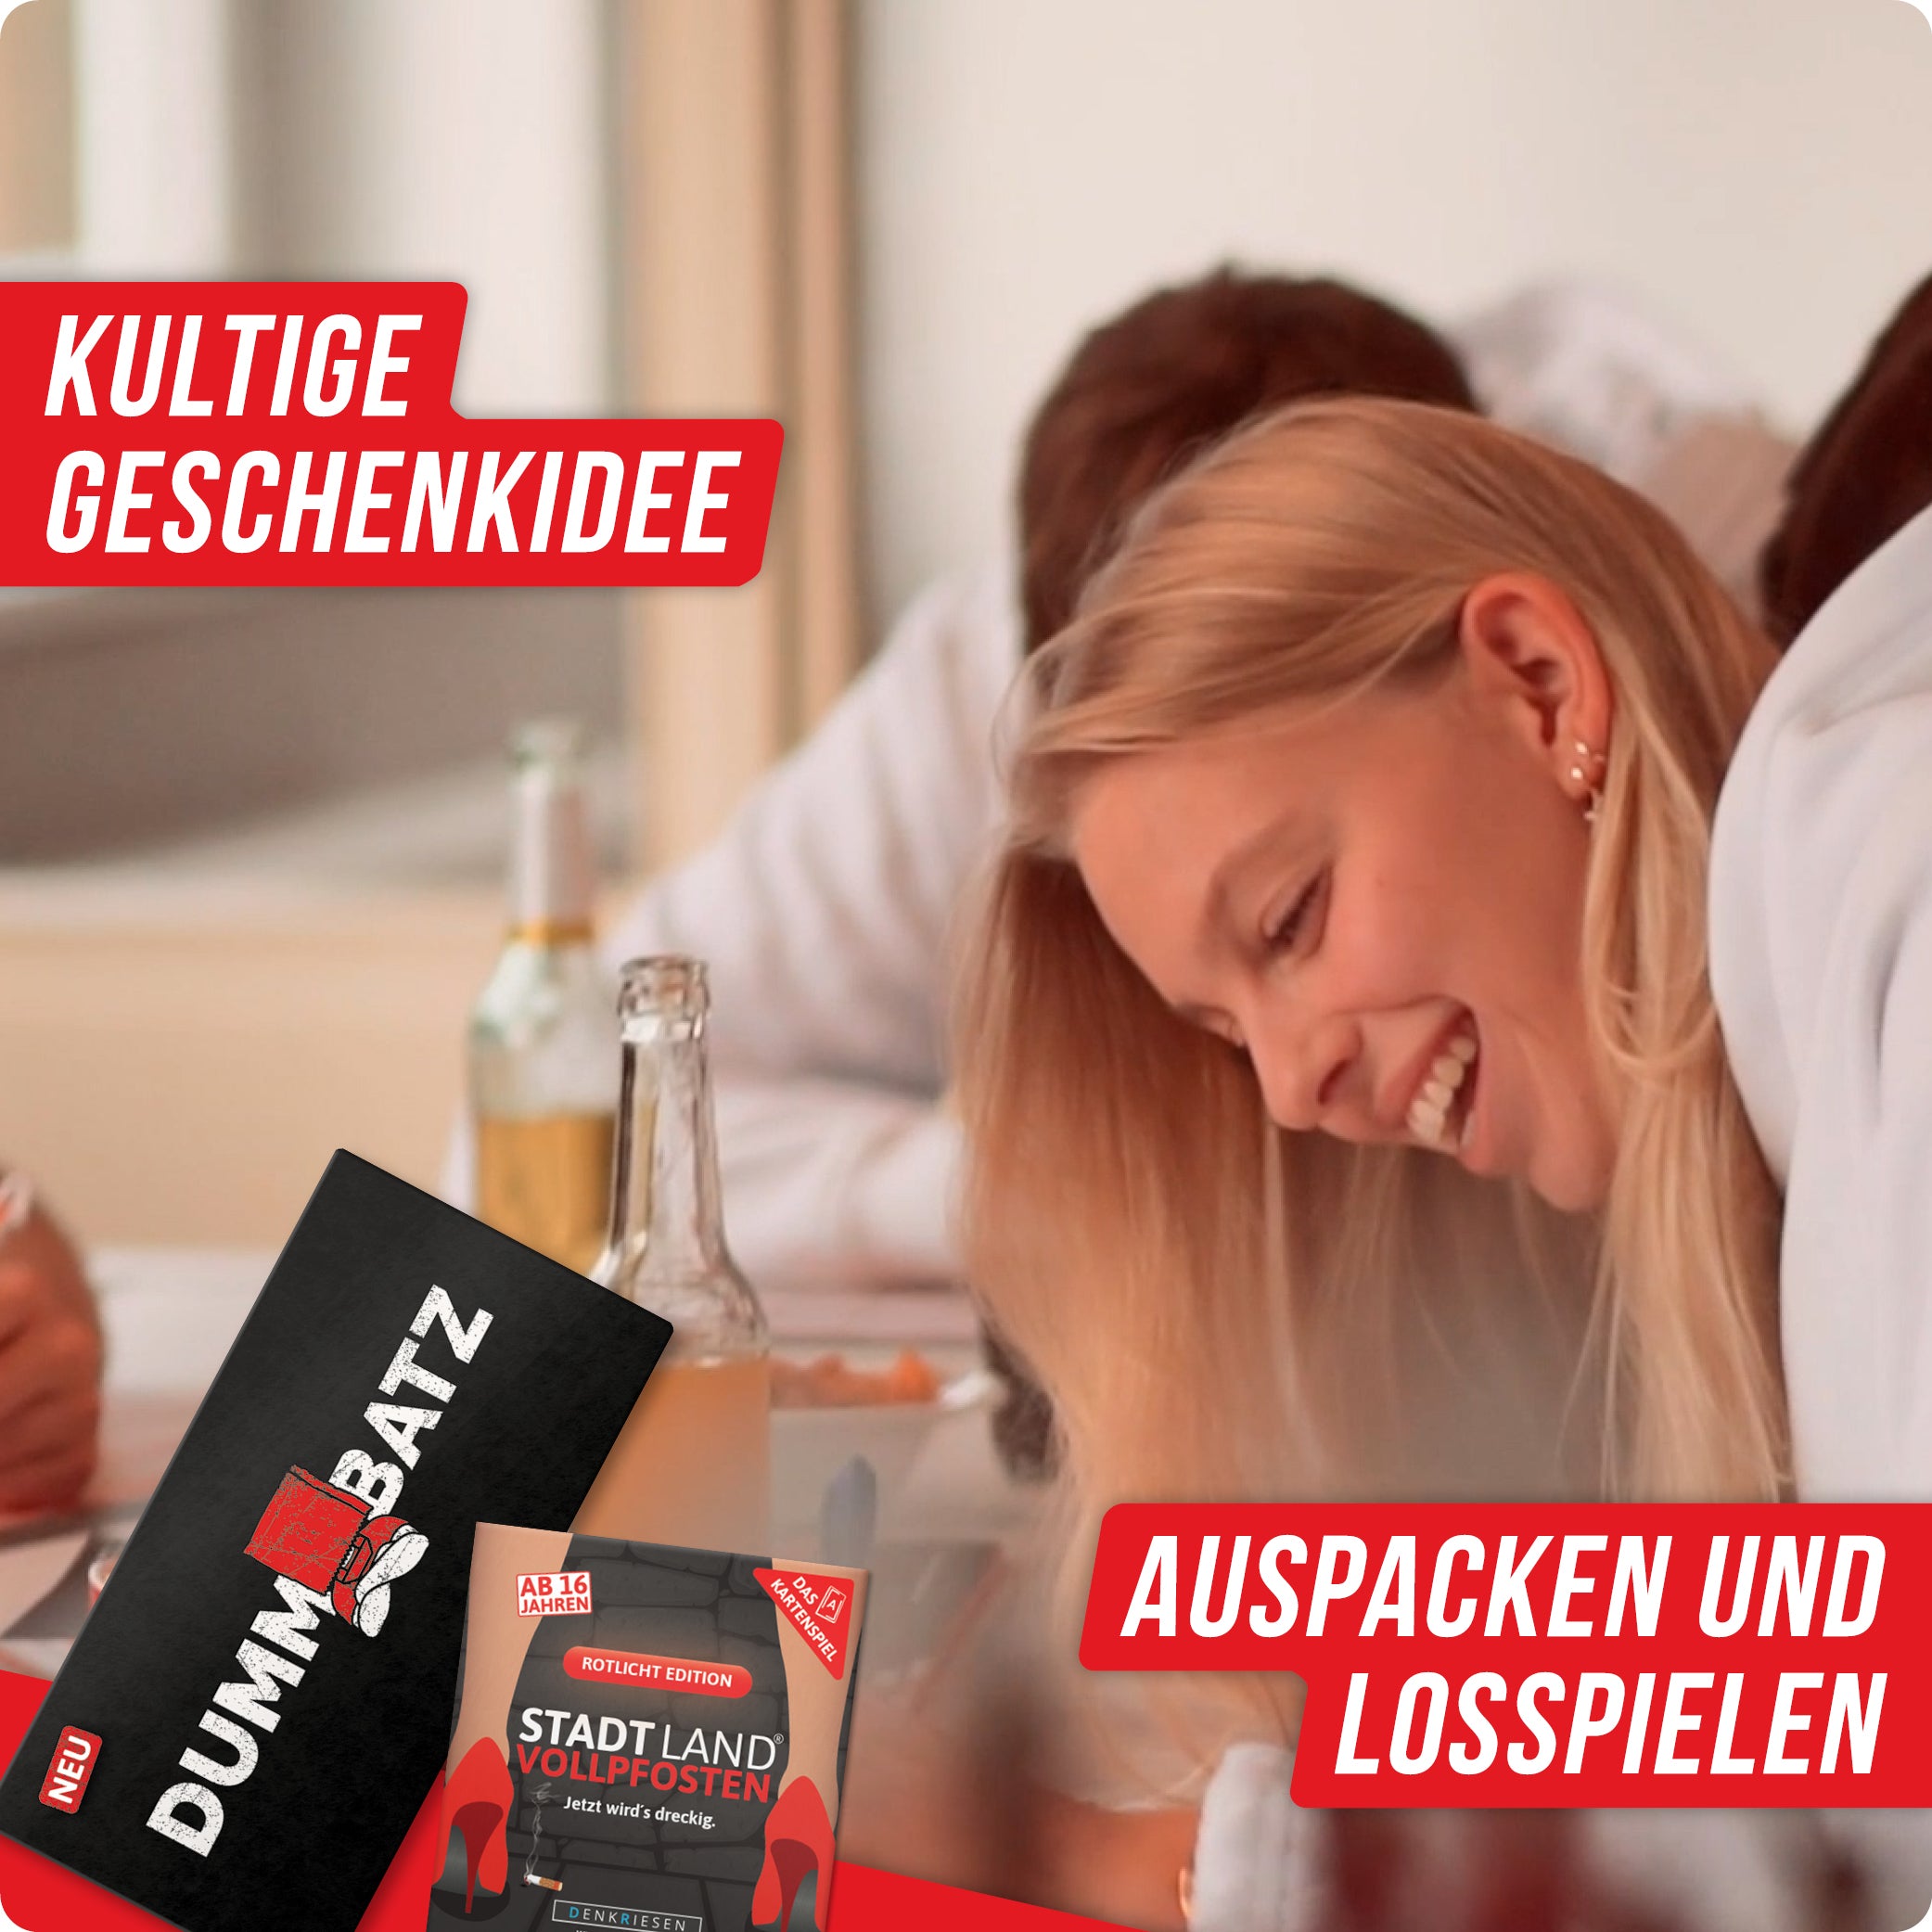 Spar-Set Katja | Stadt Land Vollpfosten® Rotlicht Edition - Das Kartenspiel | Dummbatz®